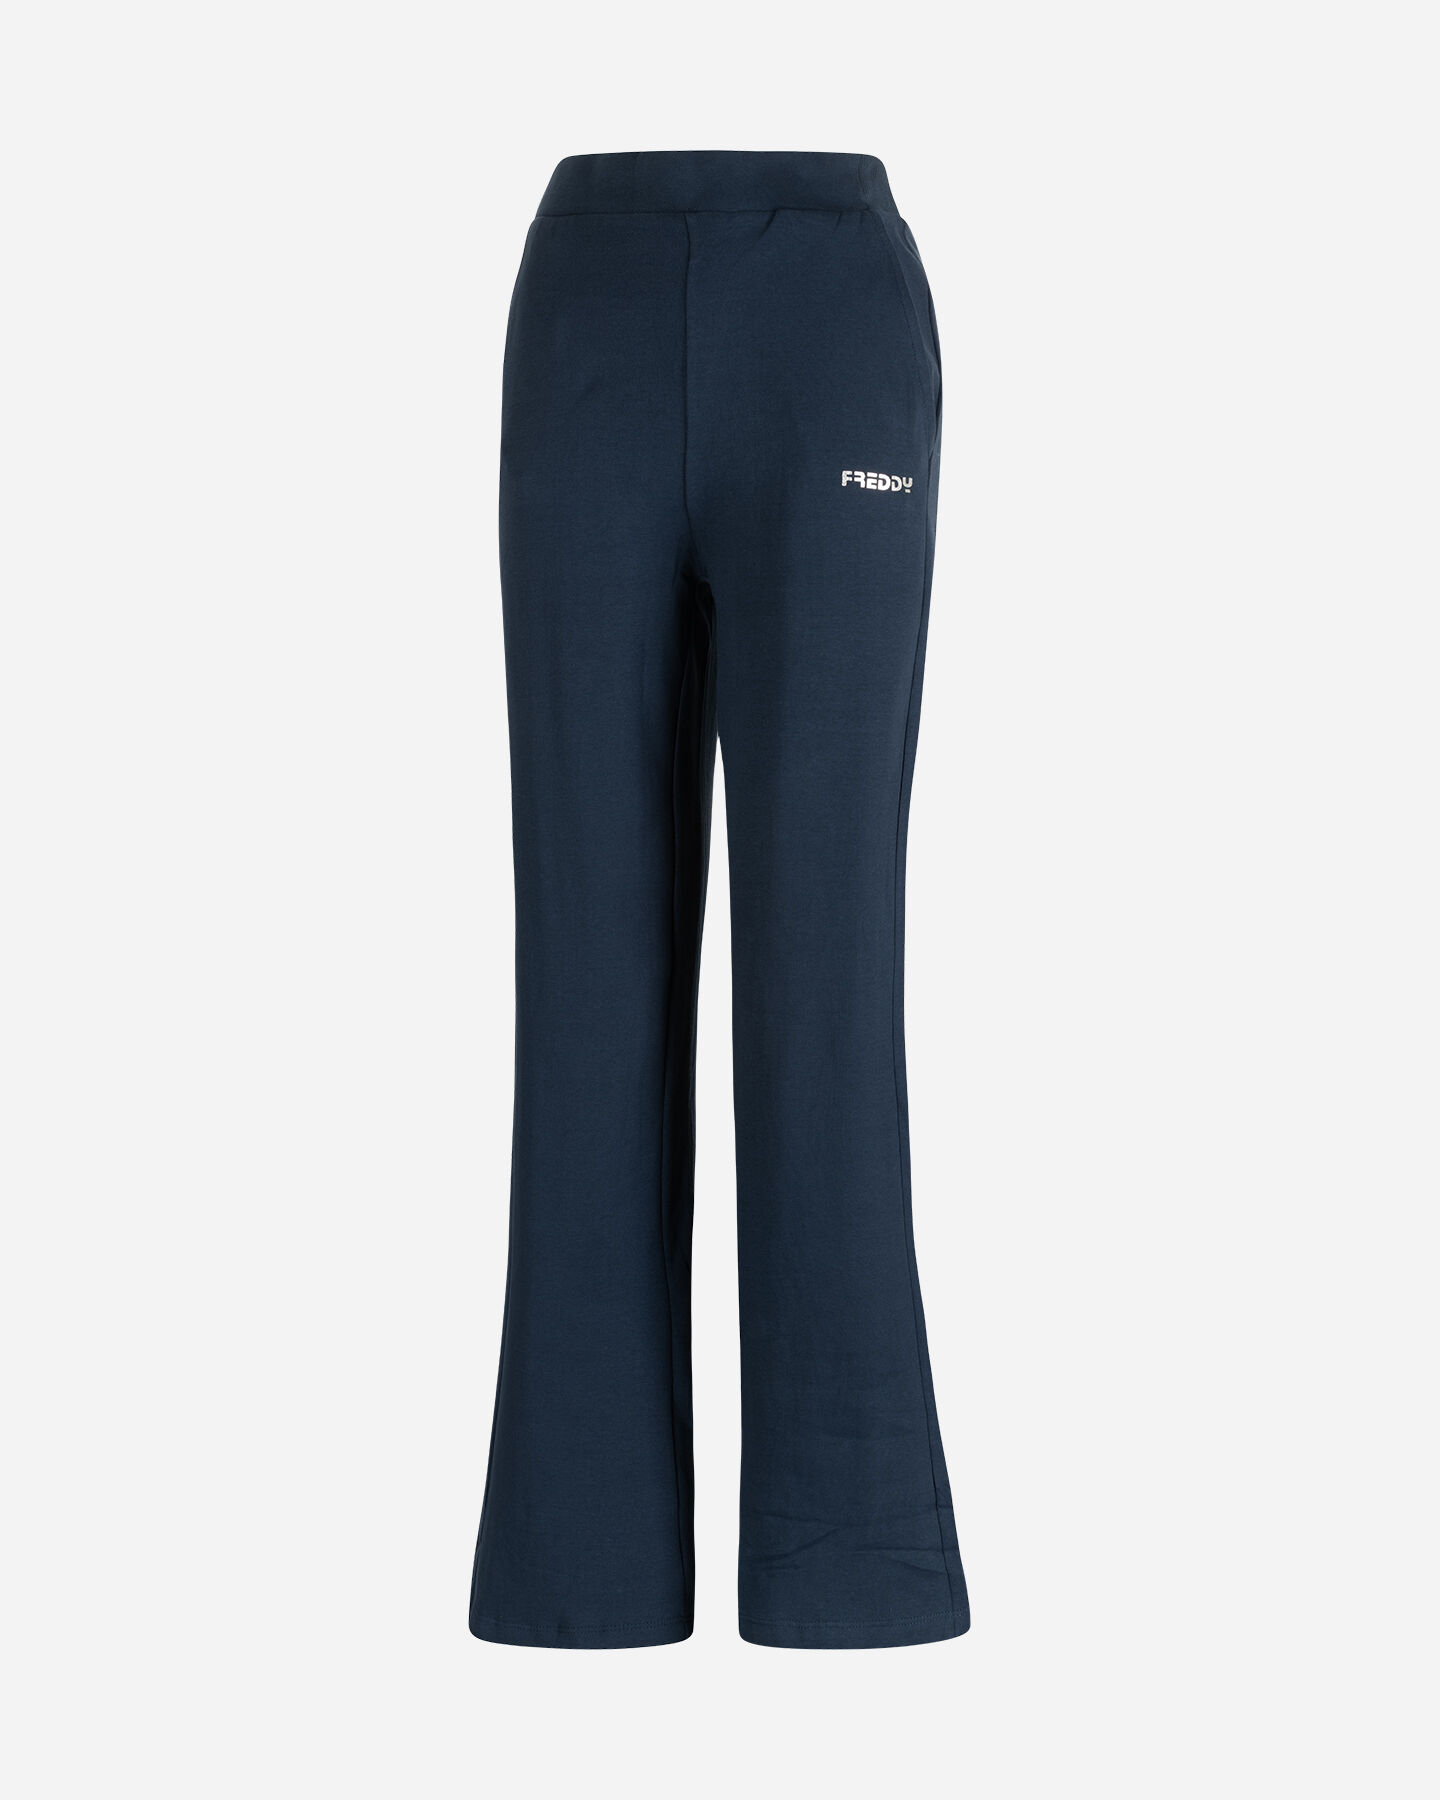  Pantalone FREDDY SMALL LOGO W S5547381|B94-|M scatto 0